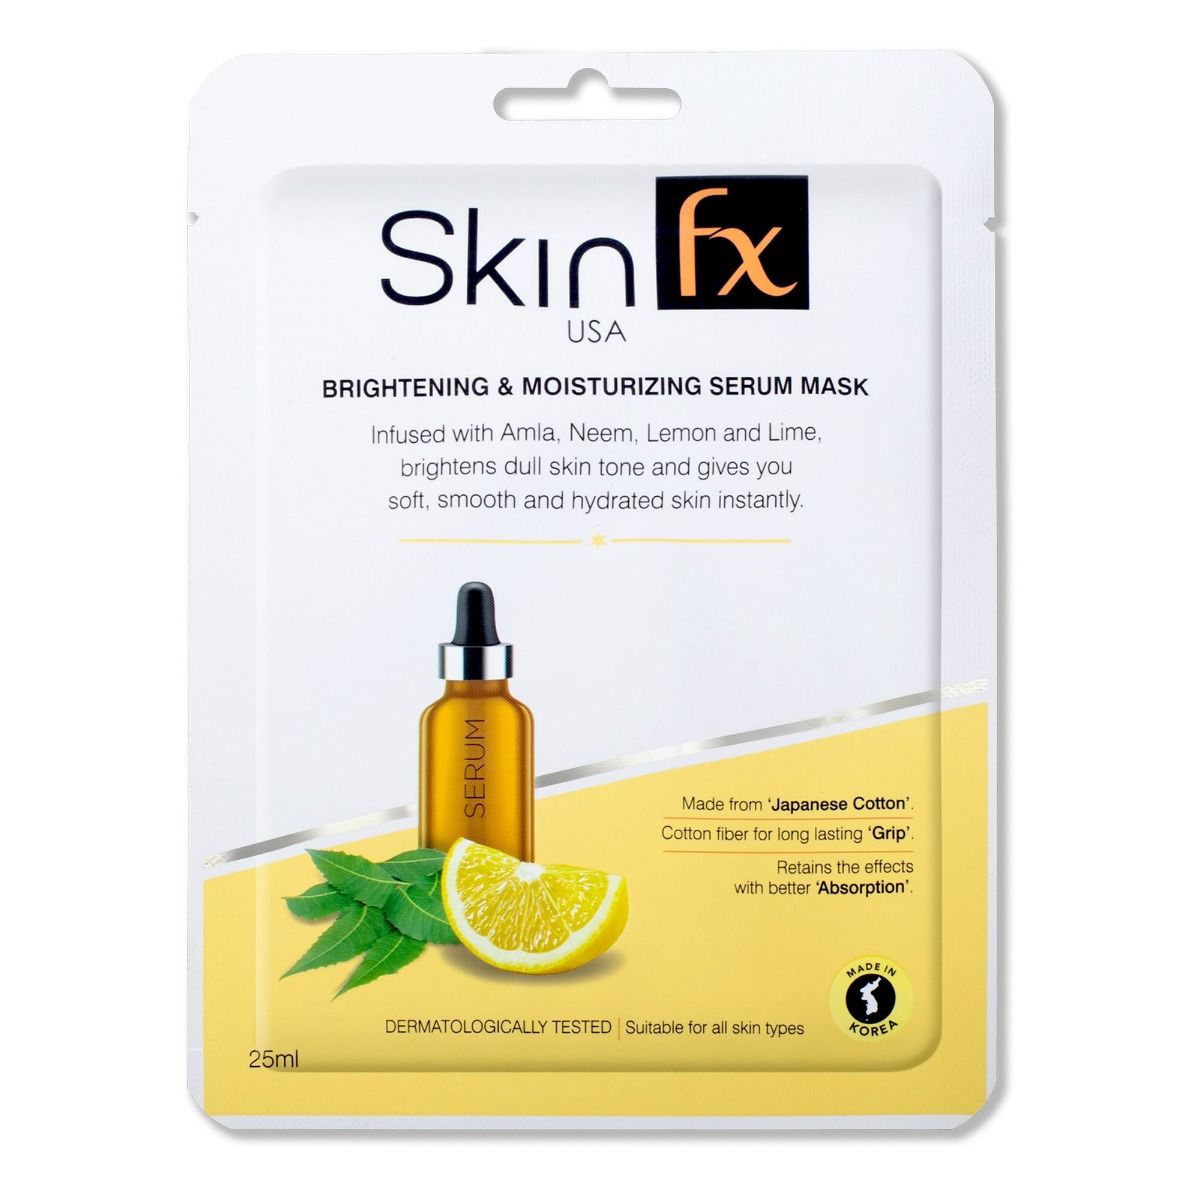 Skin Fx Brightening & Moisturizing Serum Mask, 25 ml, Pack of 1 